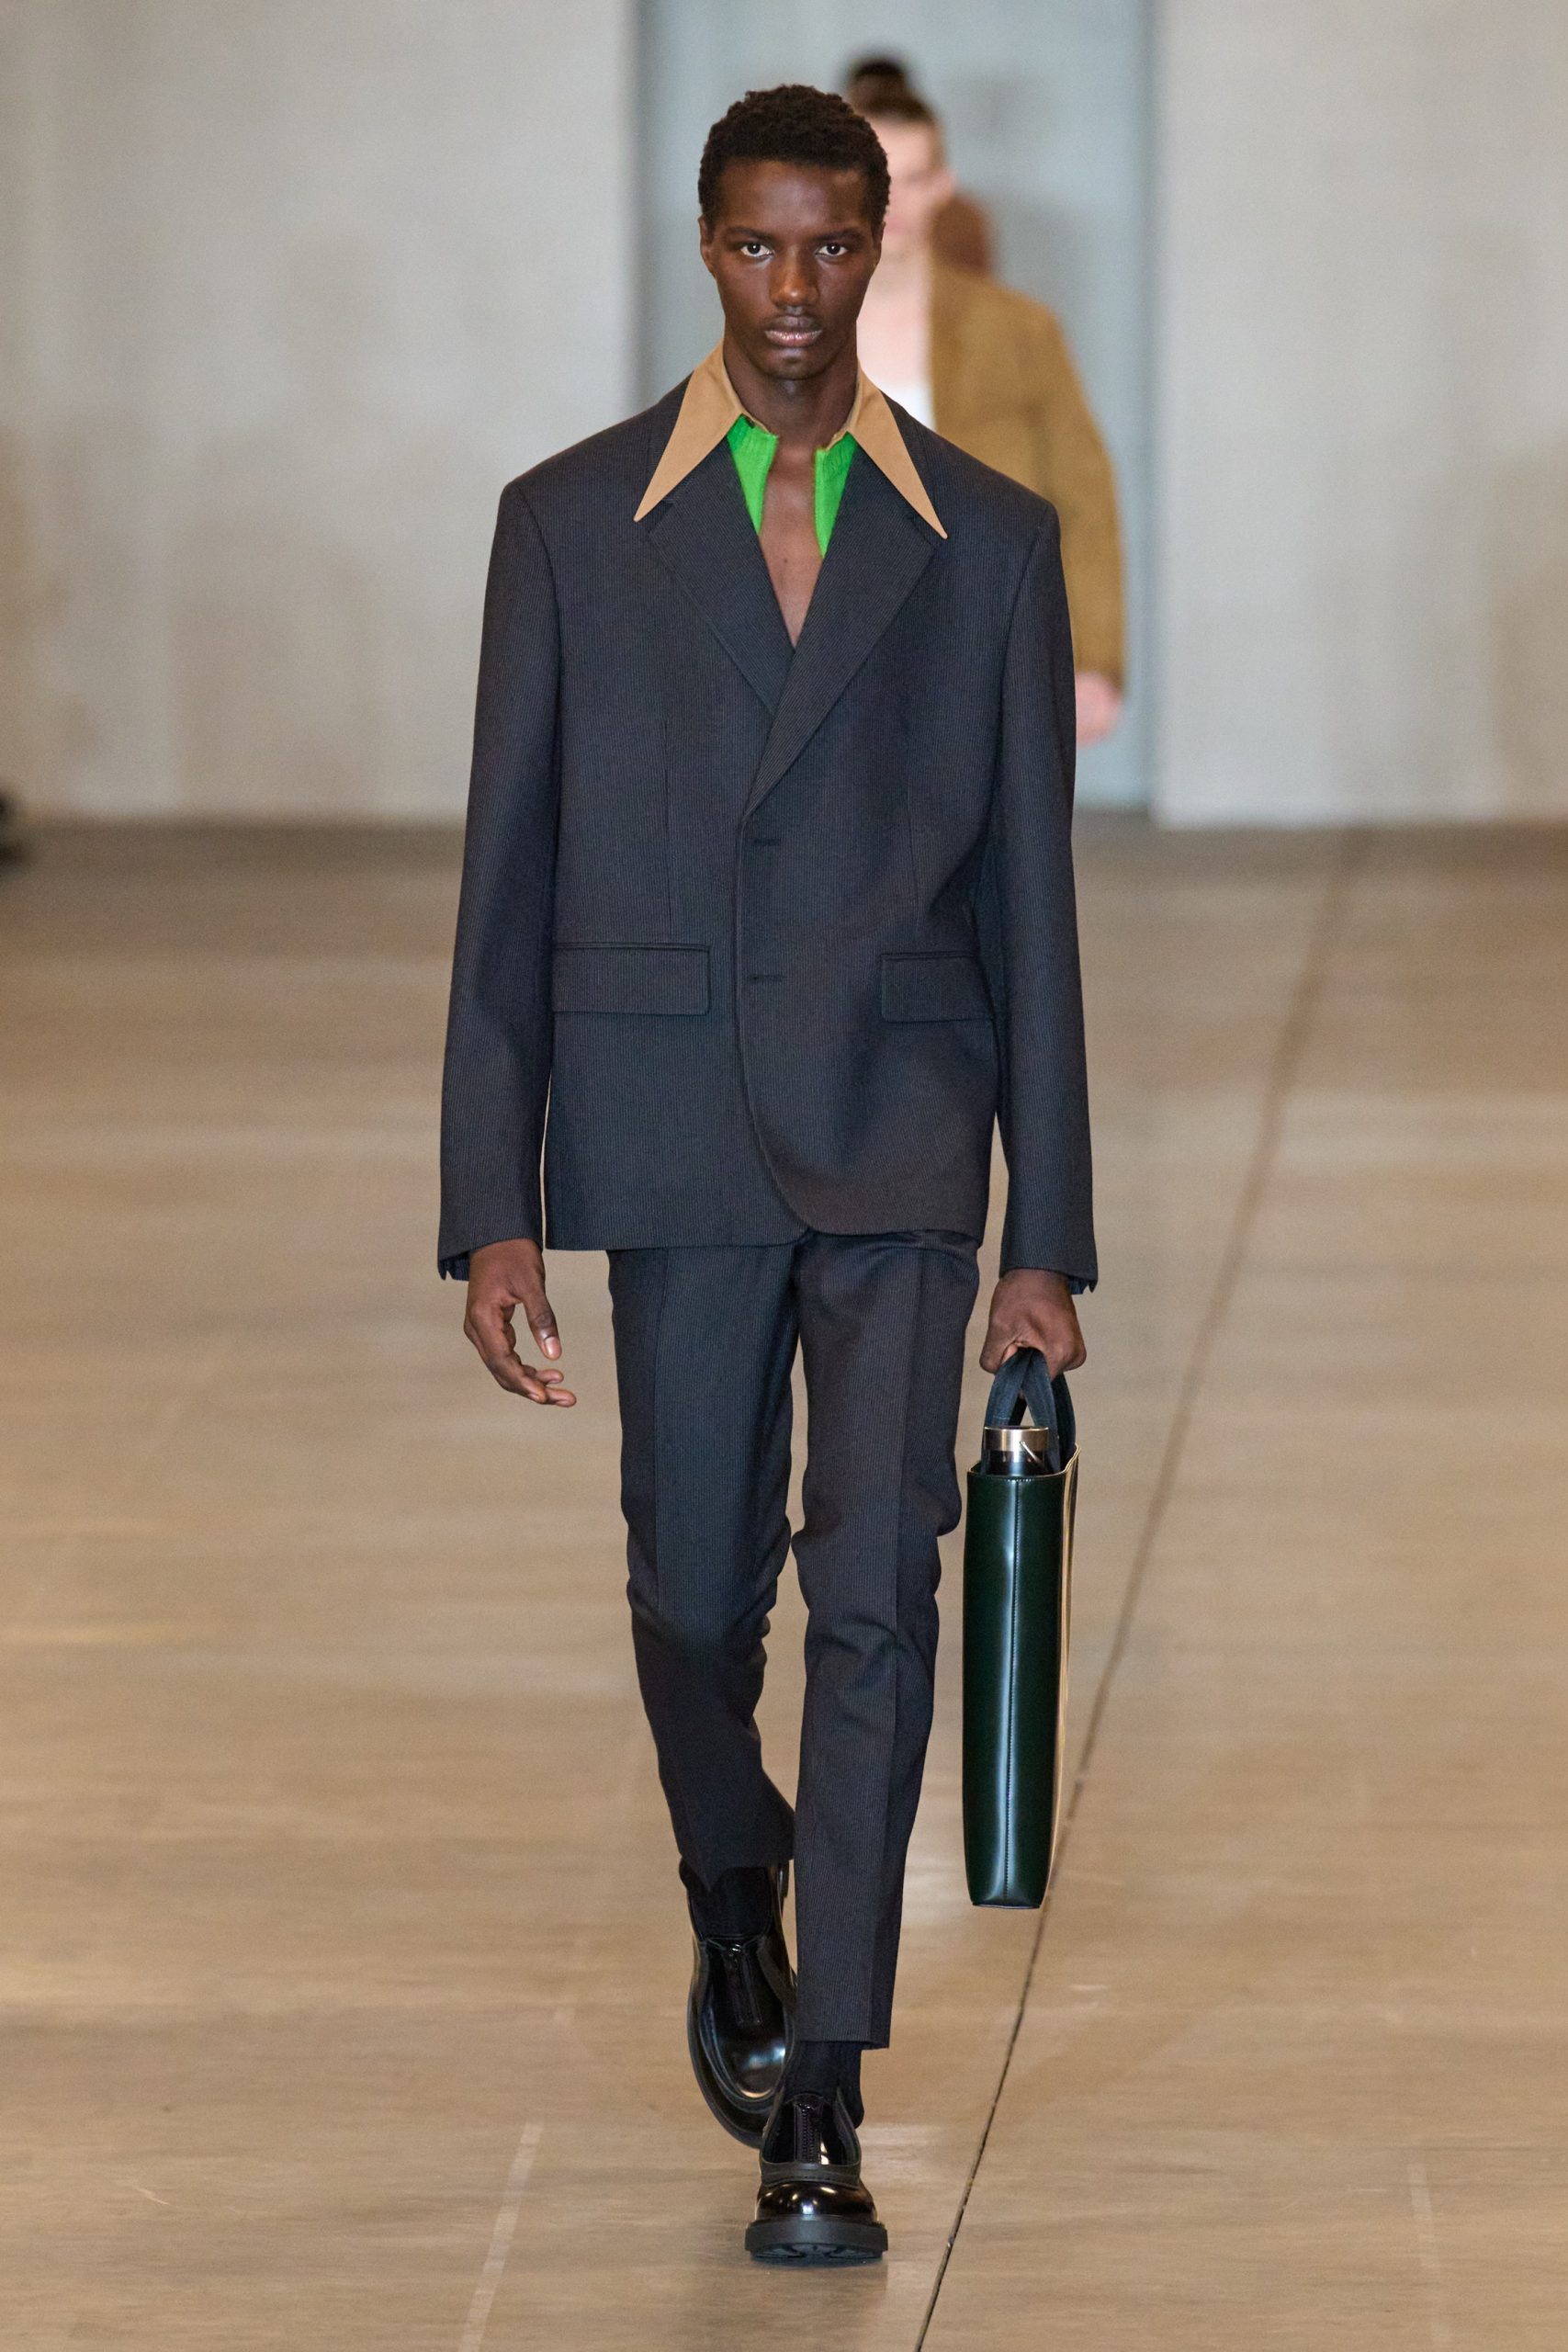 Остроконечные воротники и габаритные куртки — главные образы мужской коллекции Prada